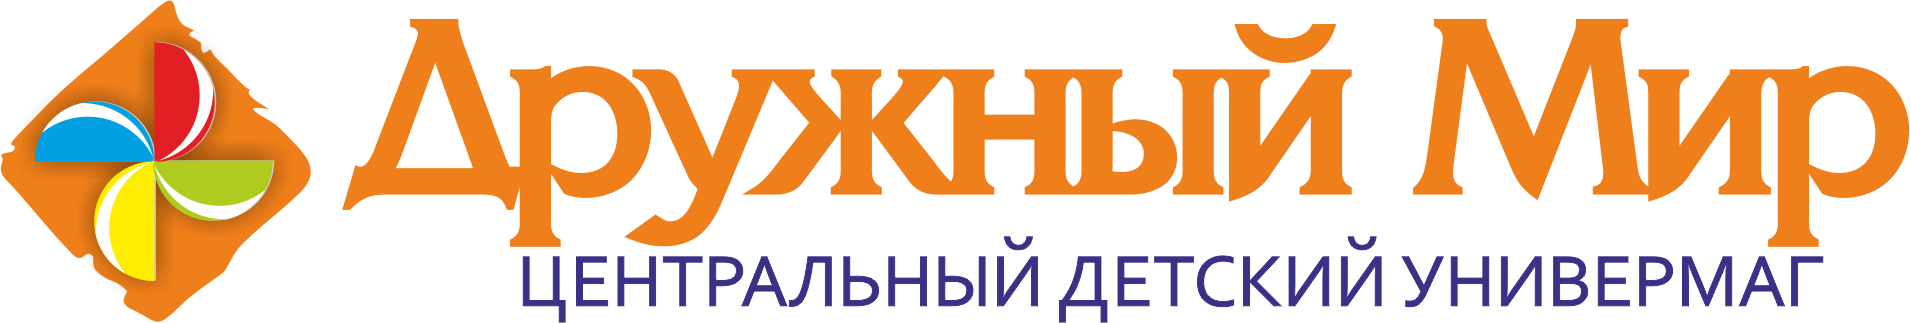 Логотип универмага Дружный мир